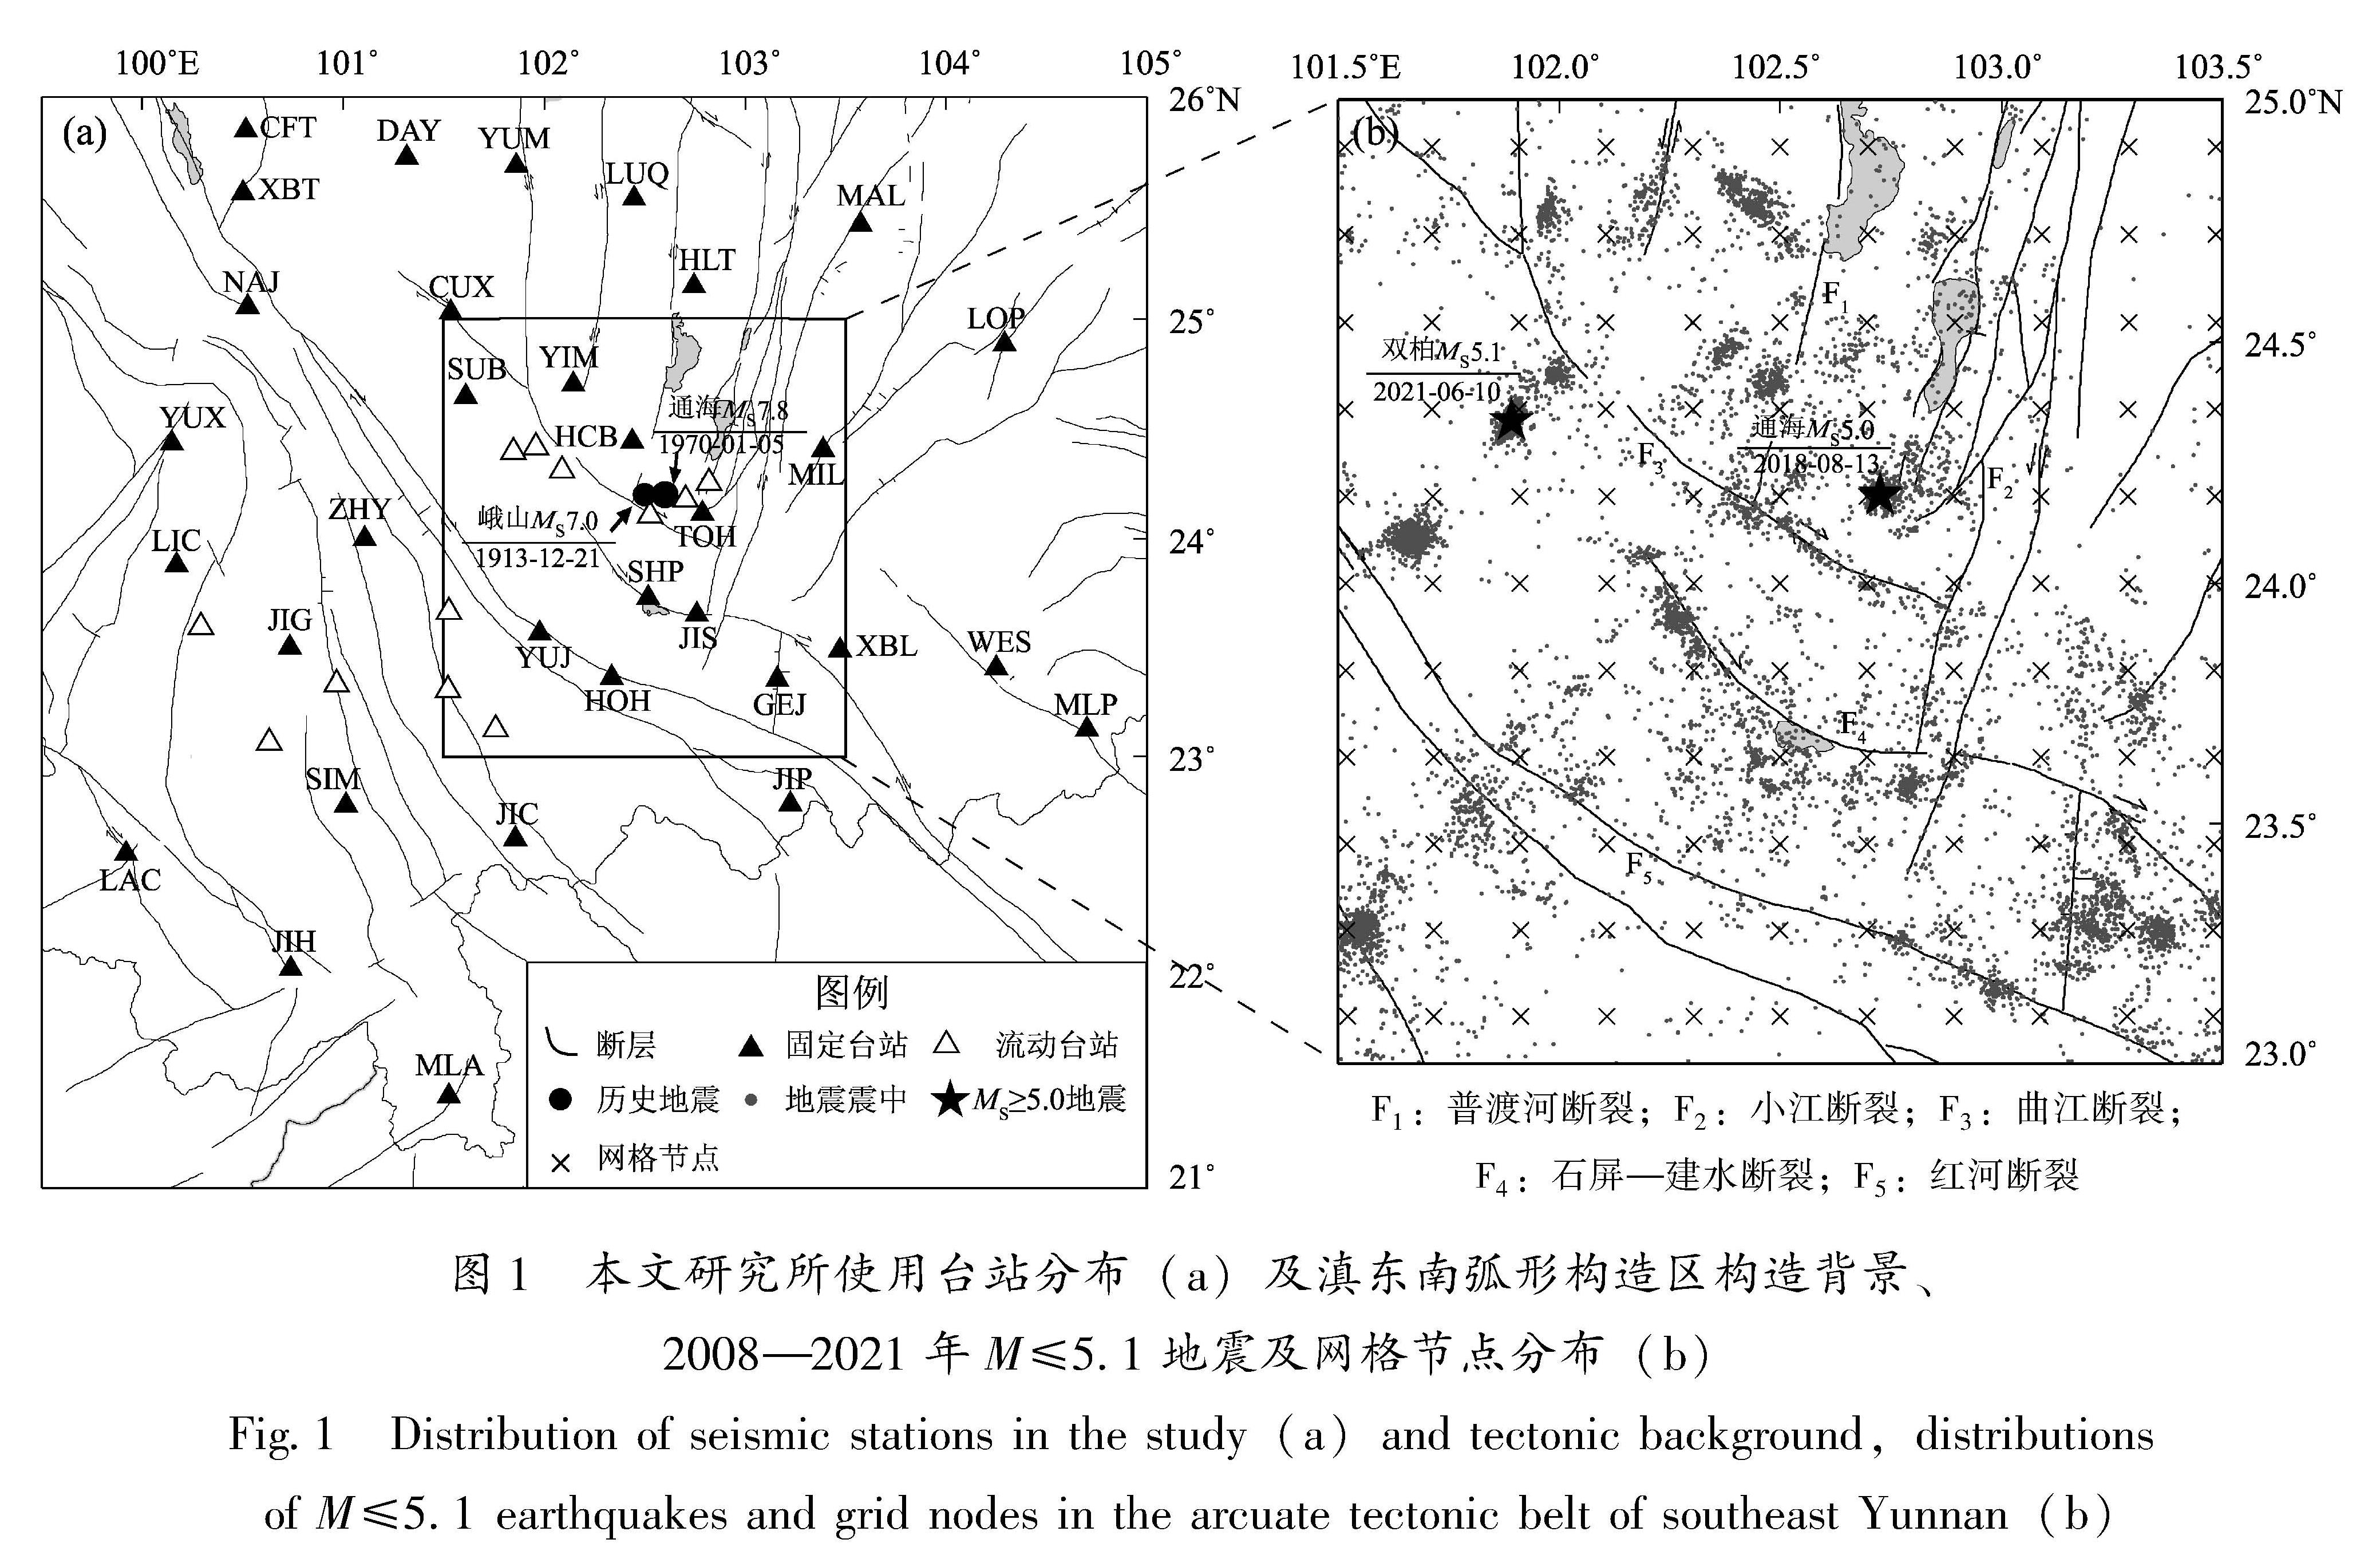 图1 本文研究所使用台站分布(a)及滇东南弧形构造区构造背景、2008—2021年M≤5.1地震及网格节点分布(b)<br/>Fig.1 Distribution of seismic stations in the study(a)and tectonic background,distributions of M≤5.1 earthquakes and grid nodes in the arcuate tectonic belt of southeast Yunnan(b)